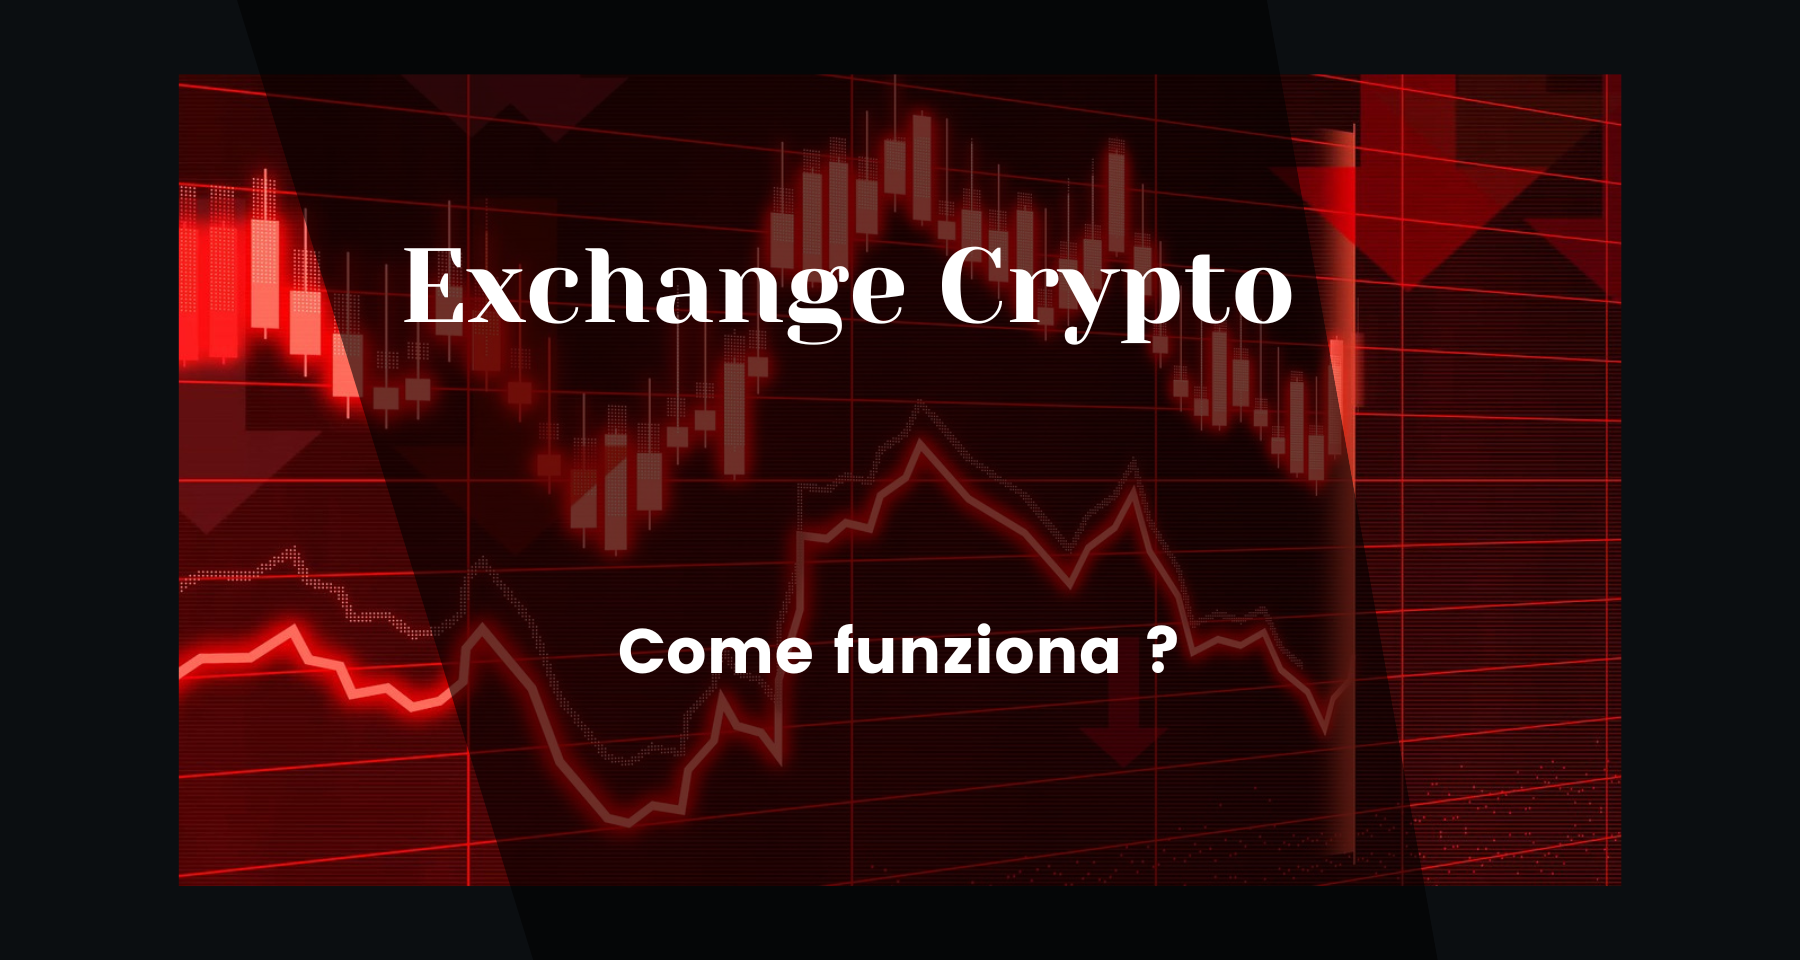 Come funziona un exchange crypto